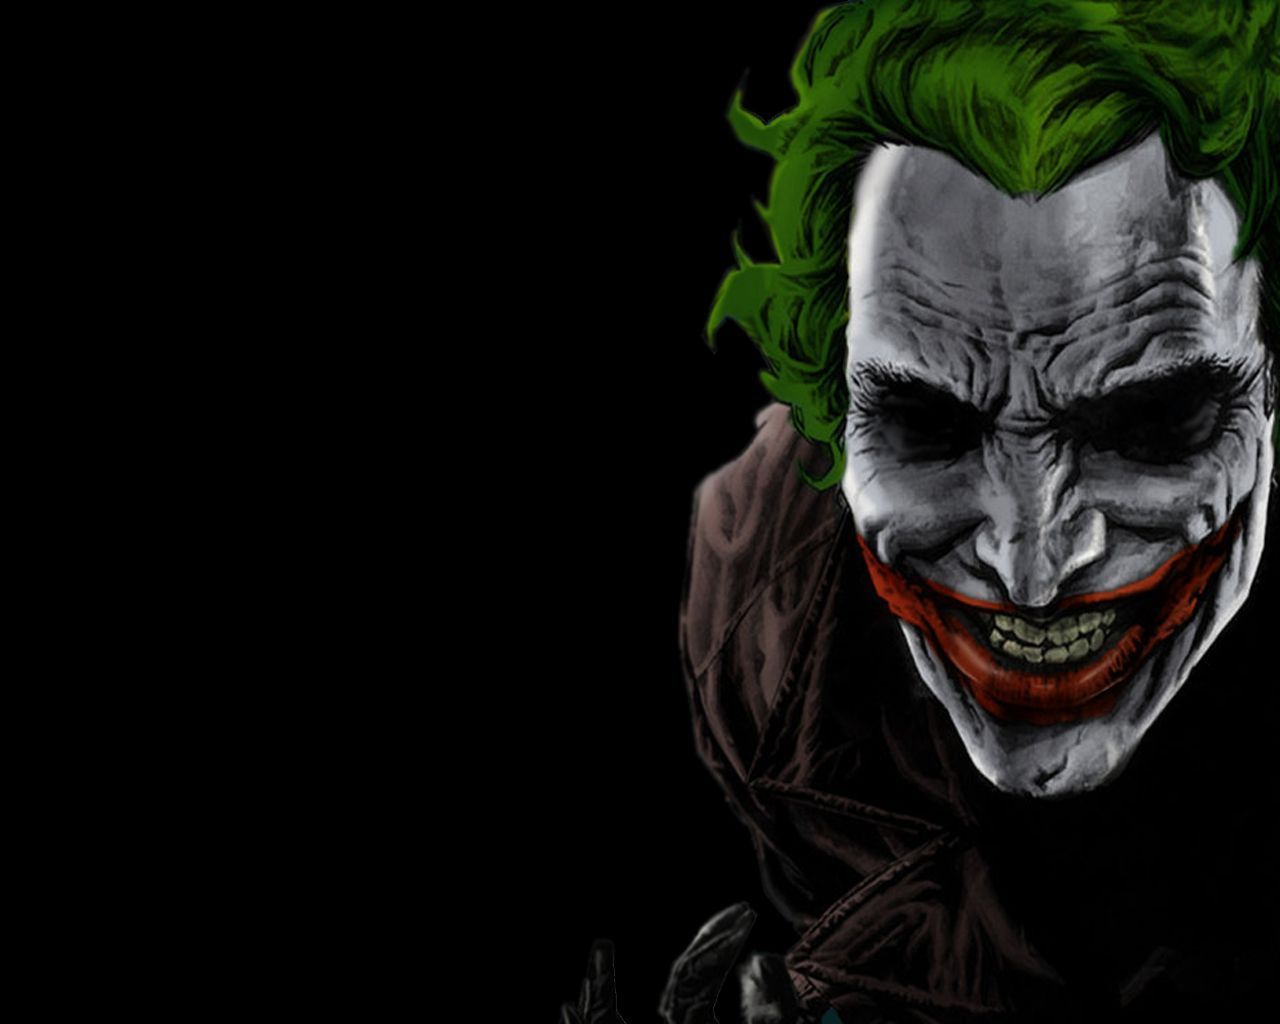 500 Joker HD Wallpapers | Backgrounds - Wallpaper Abyss